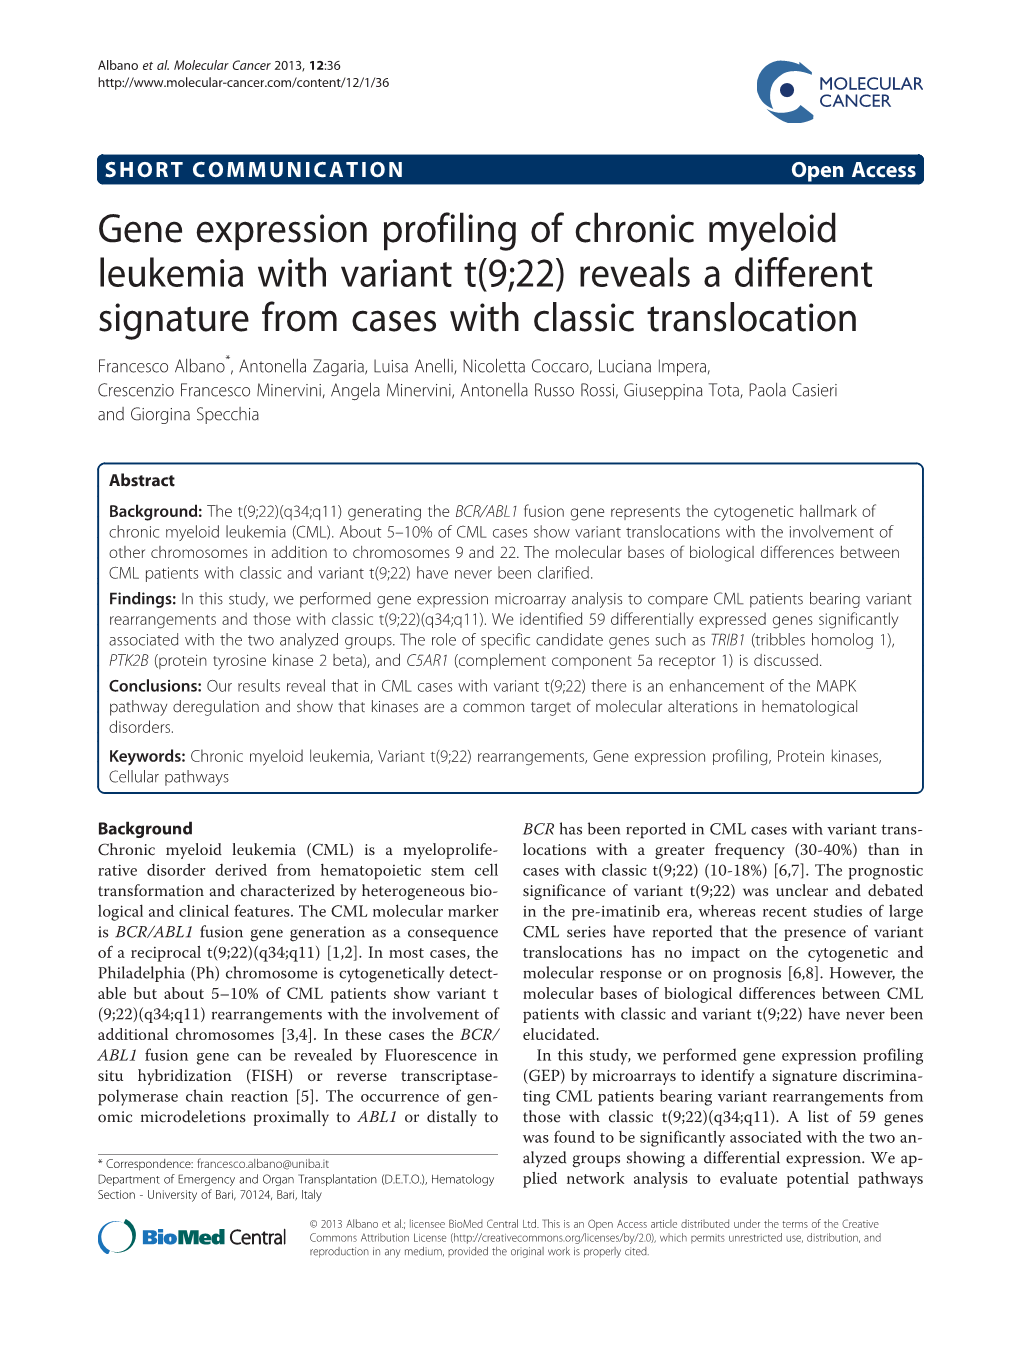 Gene Expression Profiling of Chronic Myeloid Leukemia with Variant T(9;22)